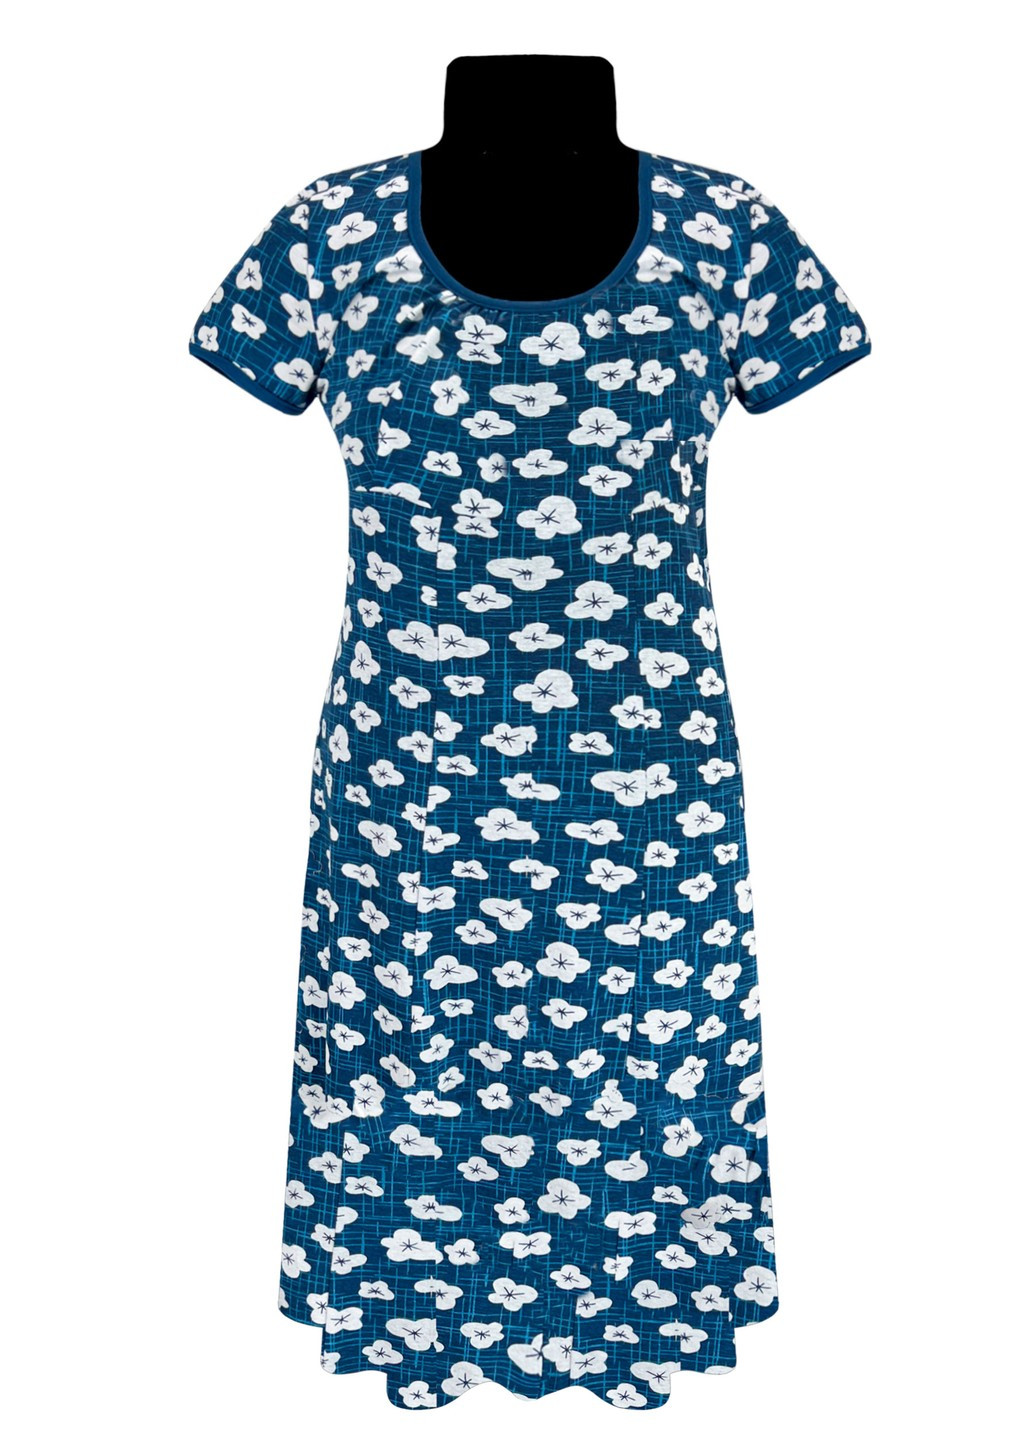 Синее повседневный платье женское цветы Жемчужина стилей с цветочным принтом